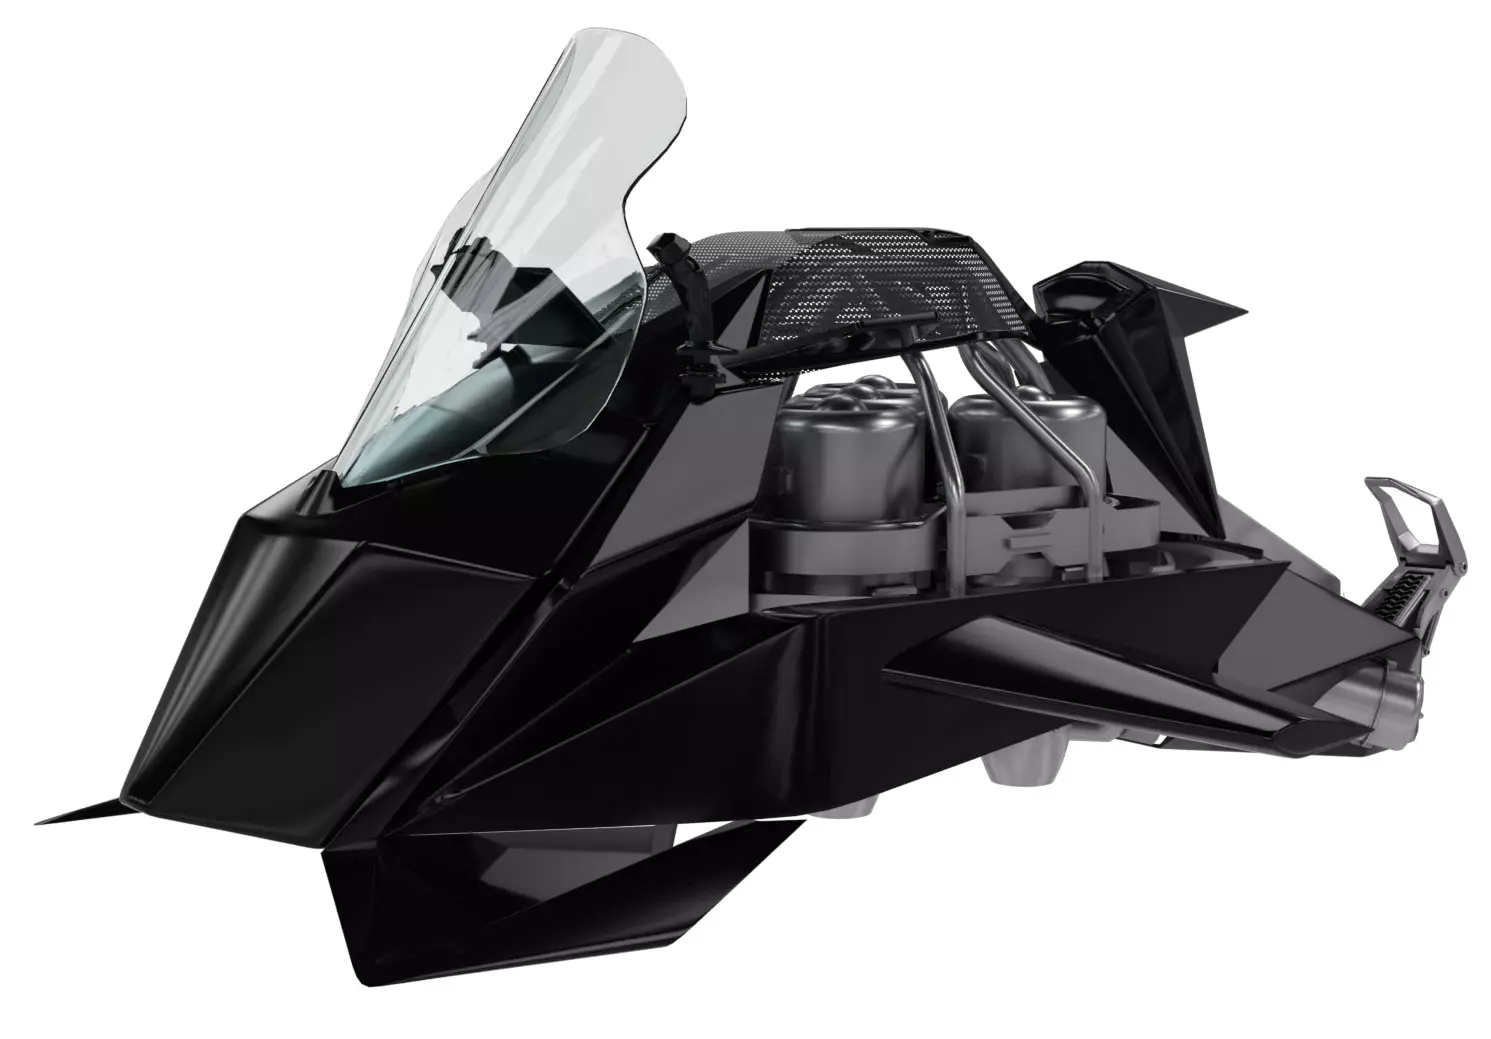 Speeder - летающий мотоцикл от небезызвестной Jetpack Aviation